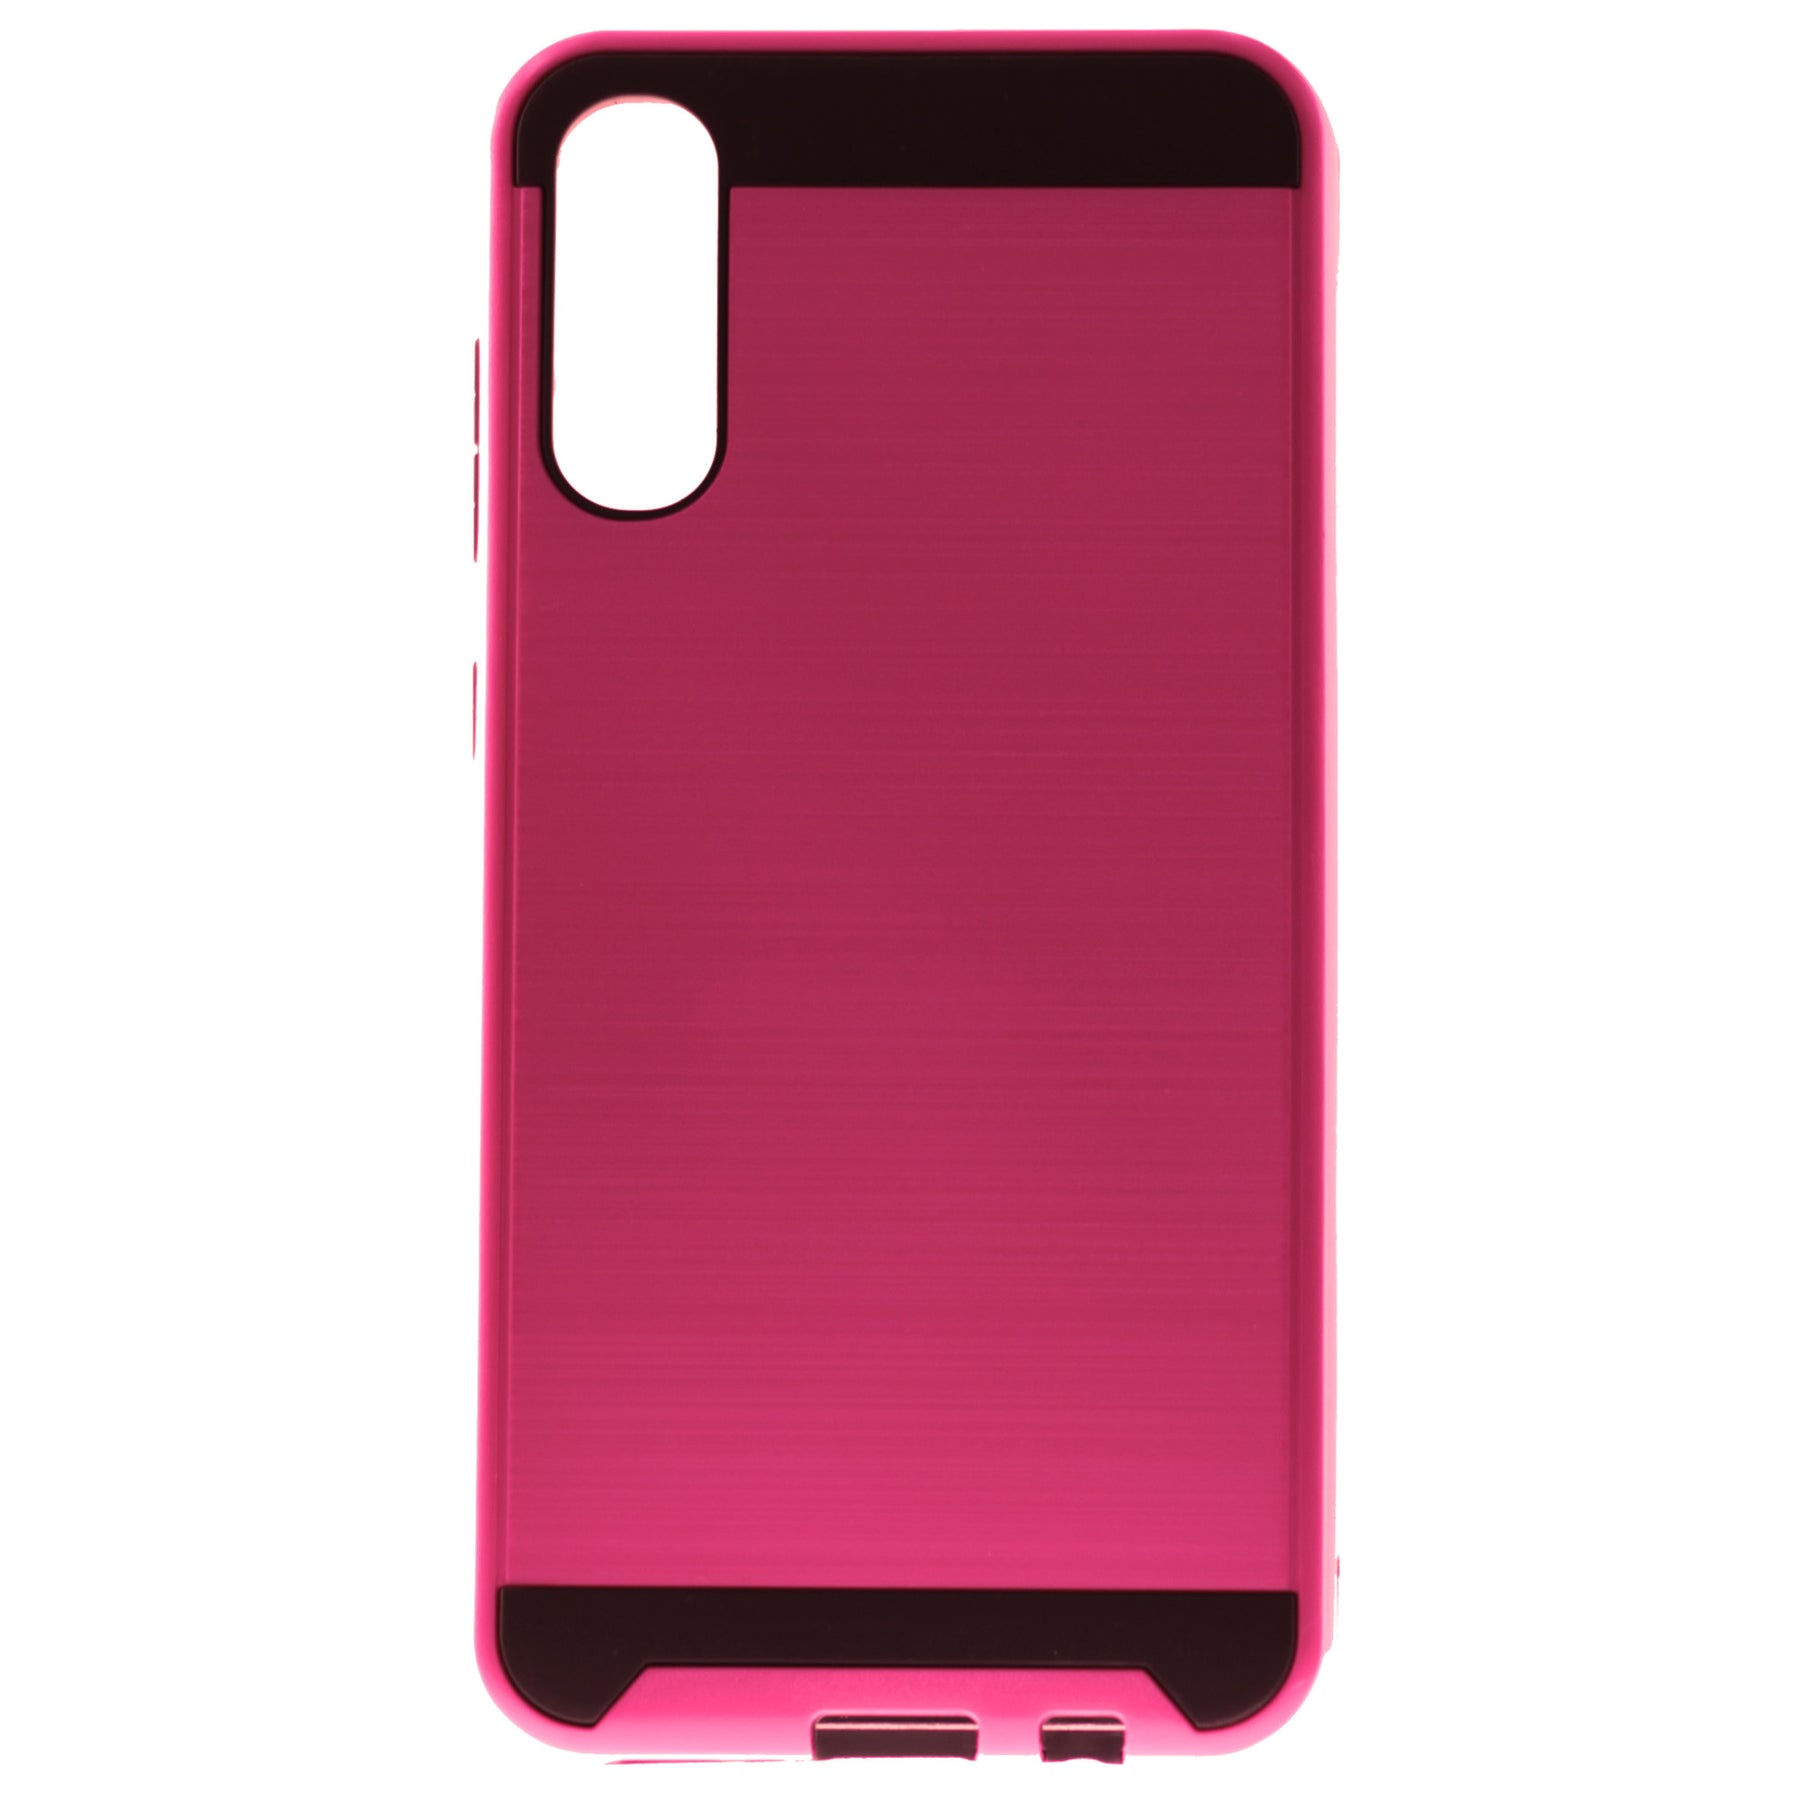 Samsung A70 slim case pink